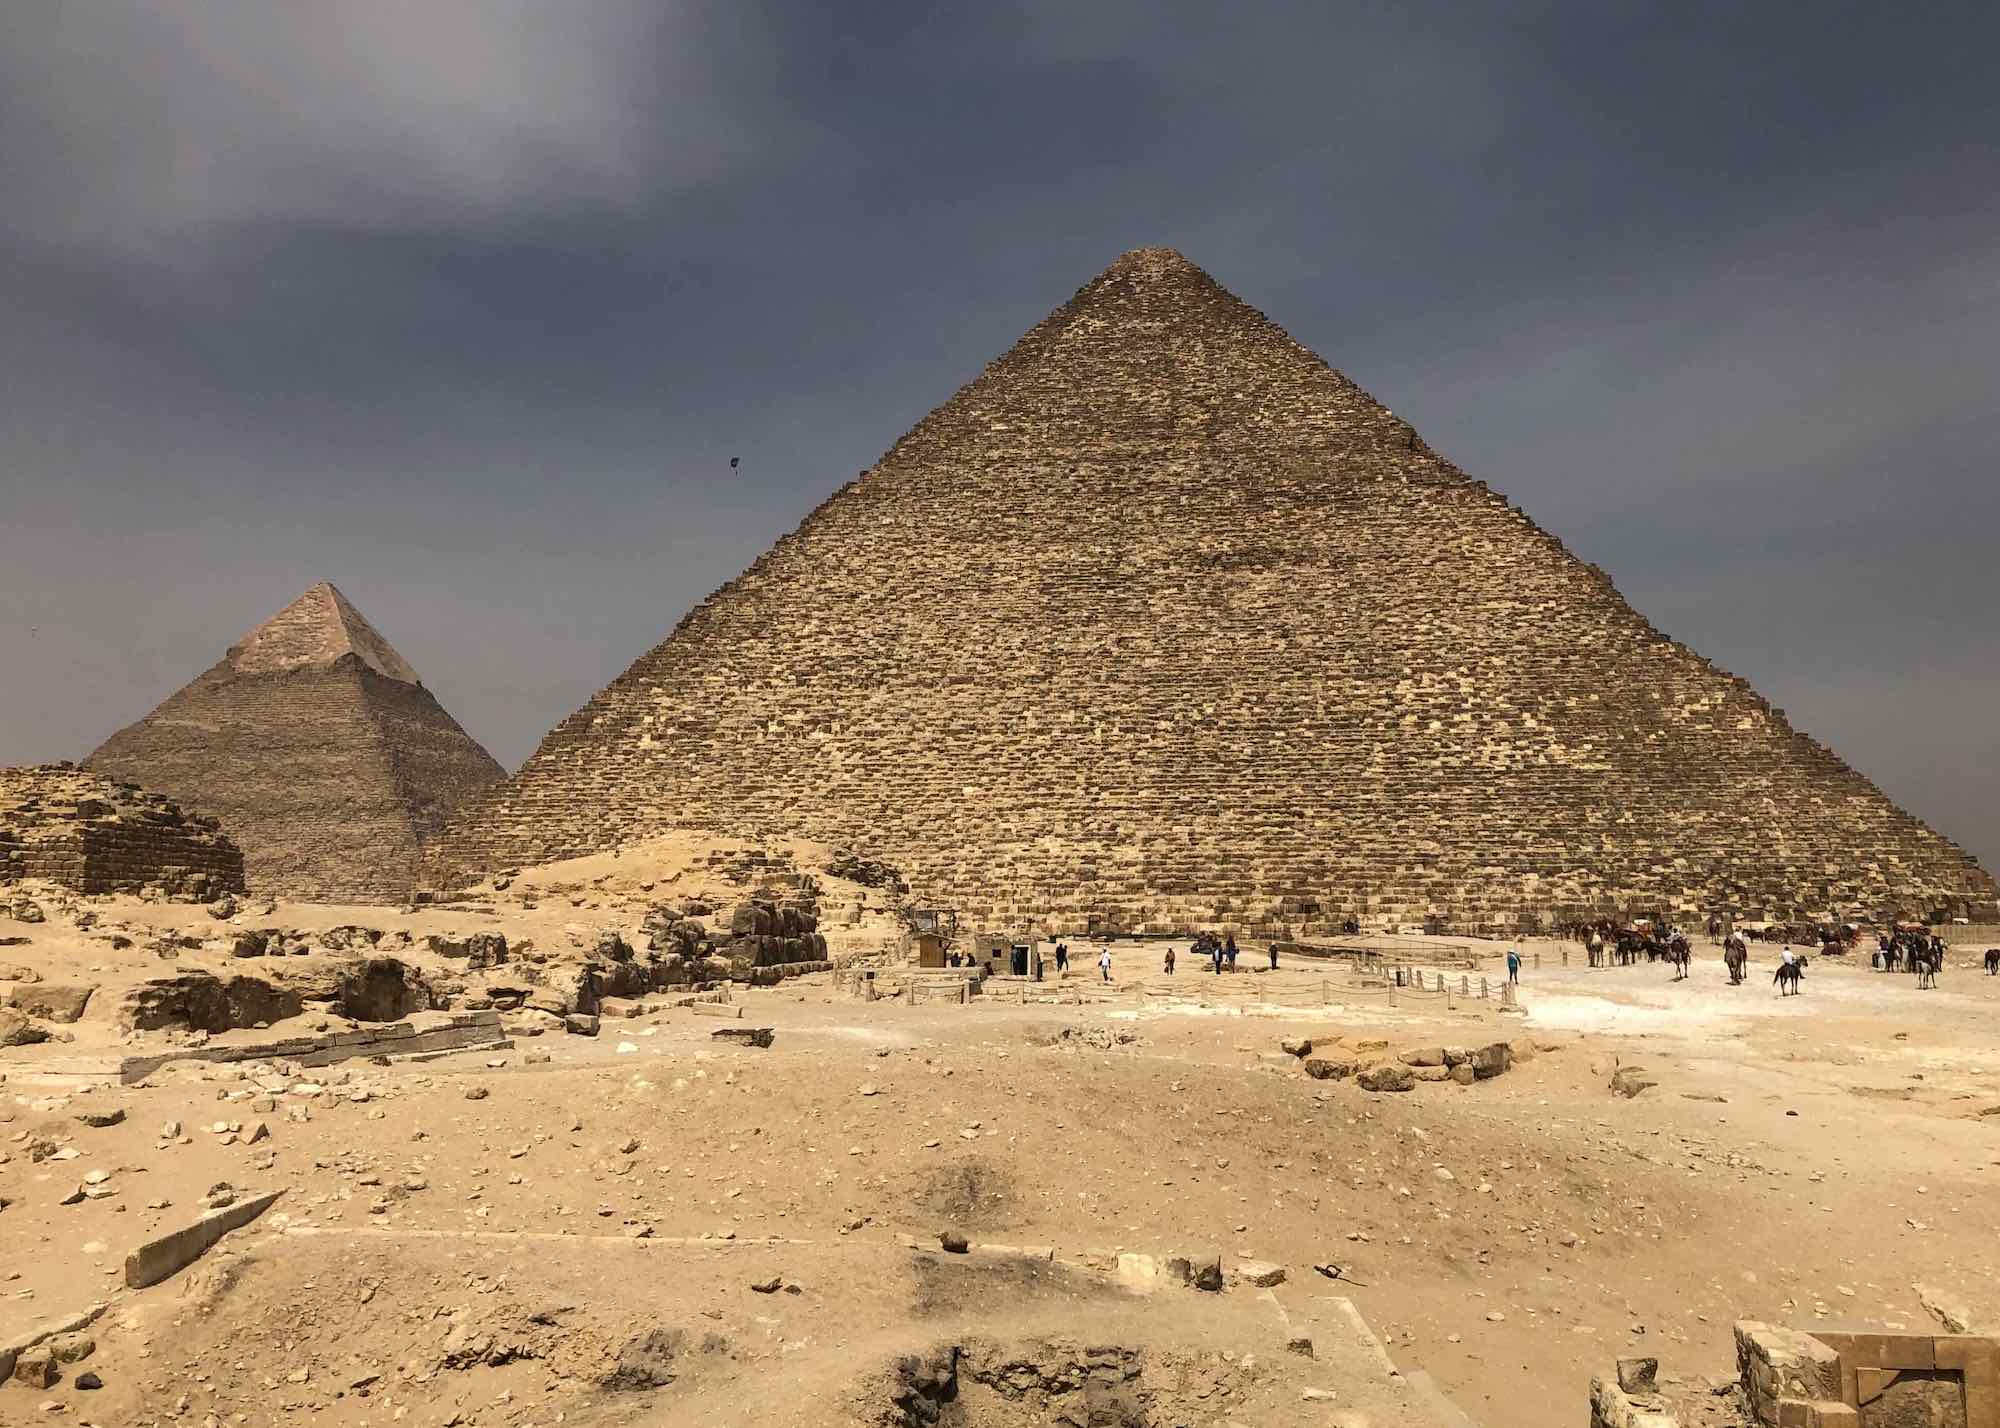 khufu and khafre pyramids